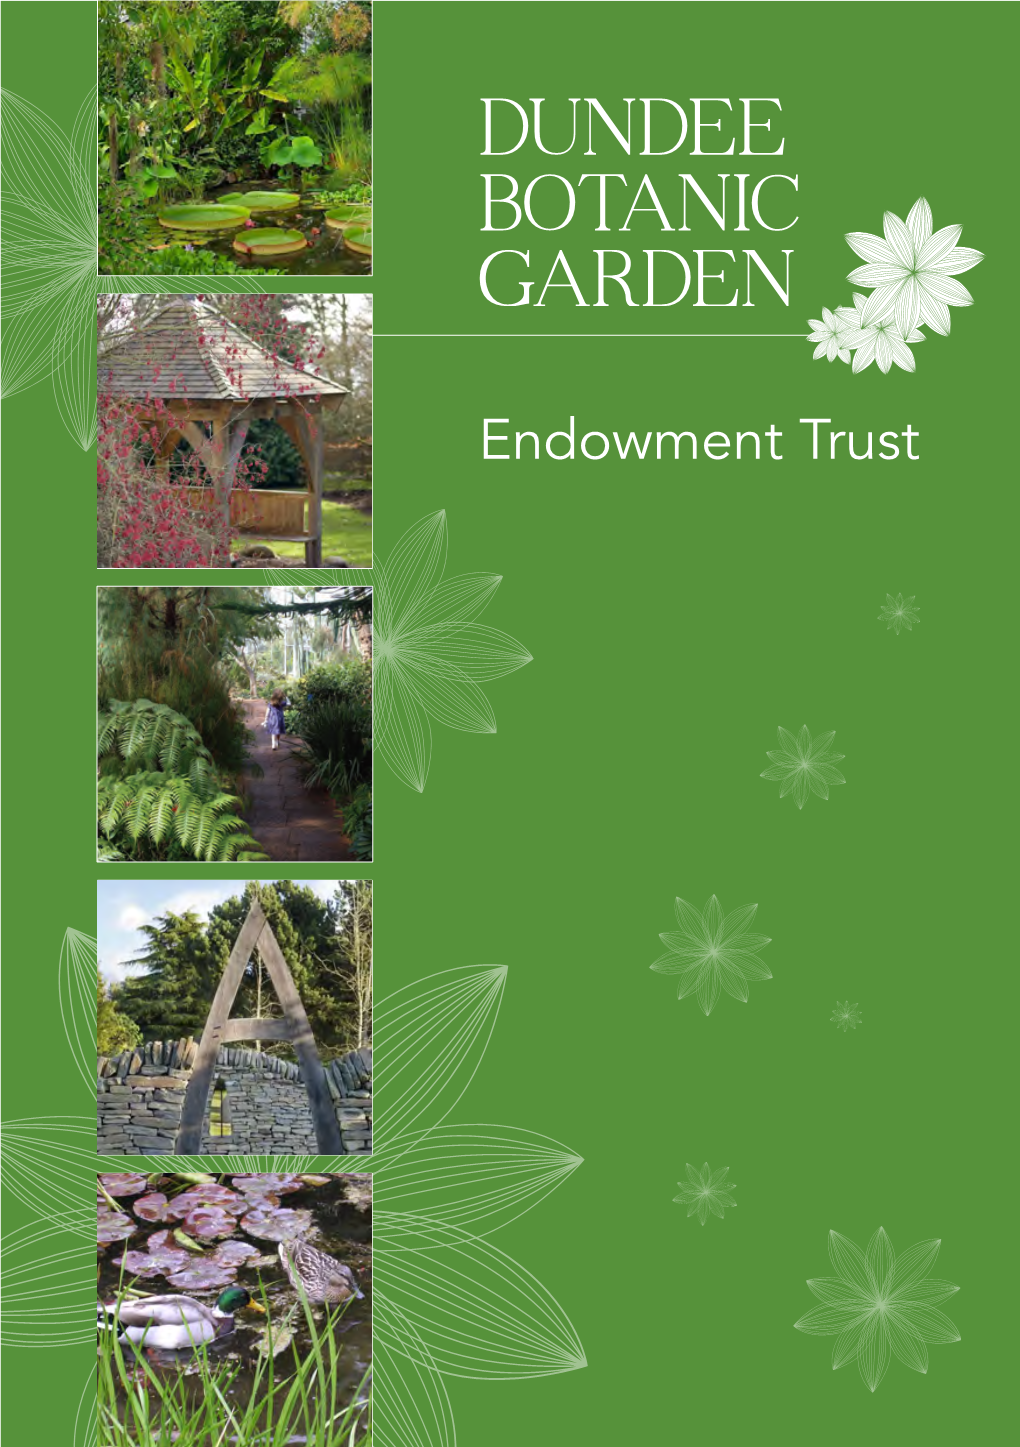 Dundee Botanic Garden Endowment Trust Leaflet